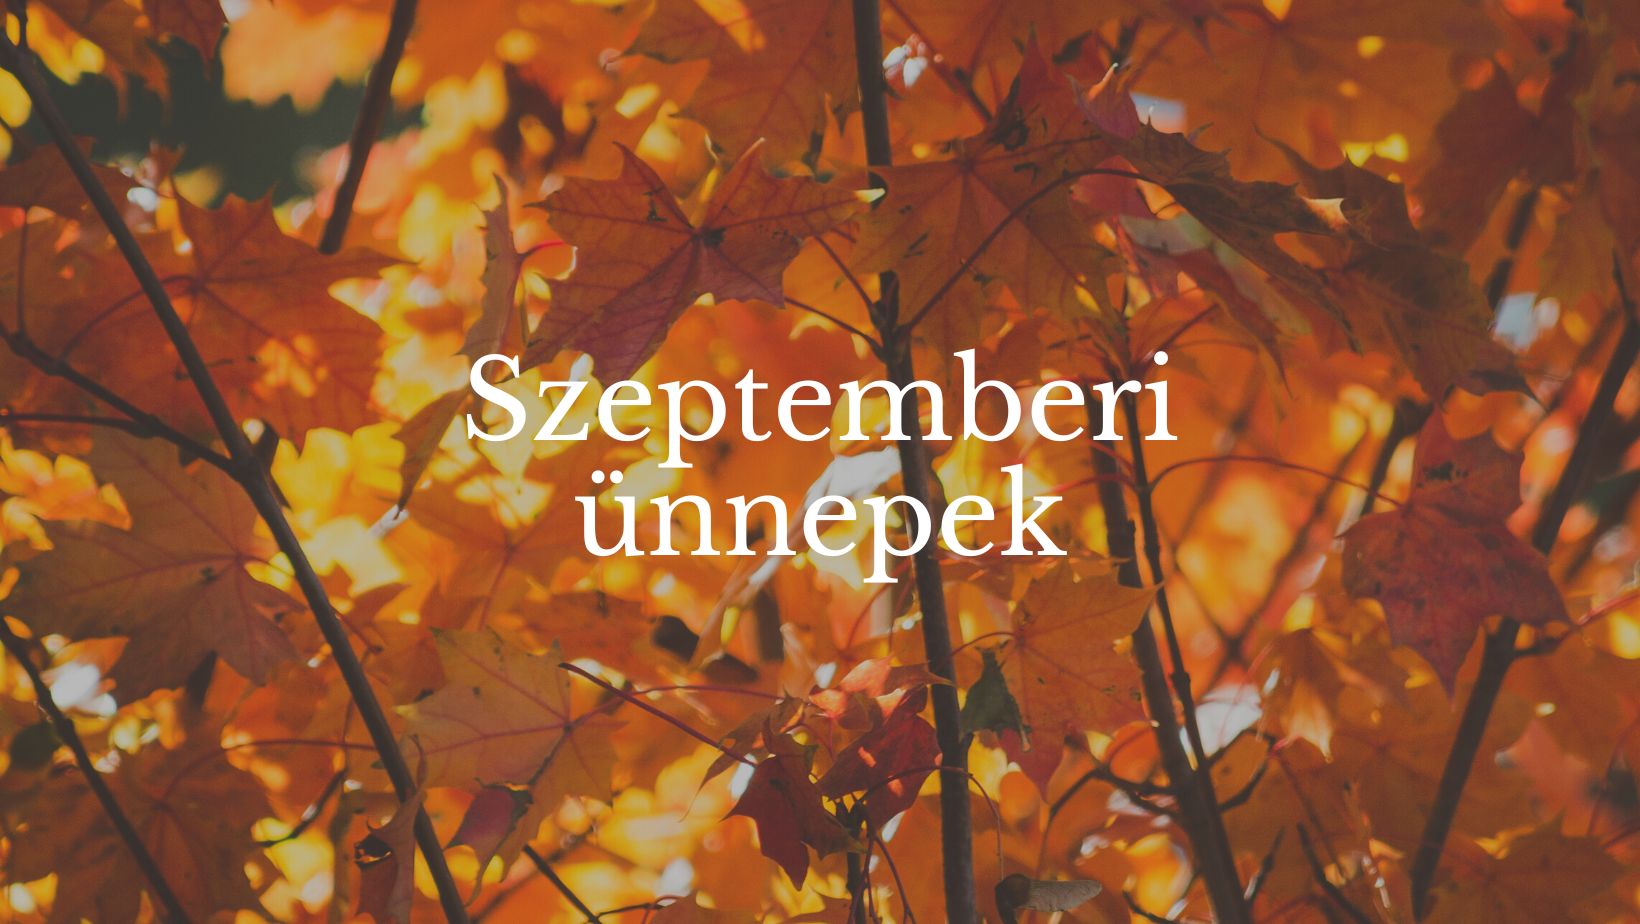 Szeptemberi ünnepek és jeles napok